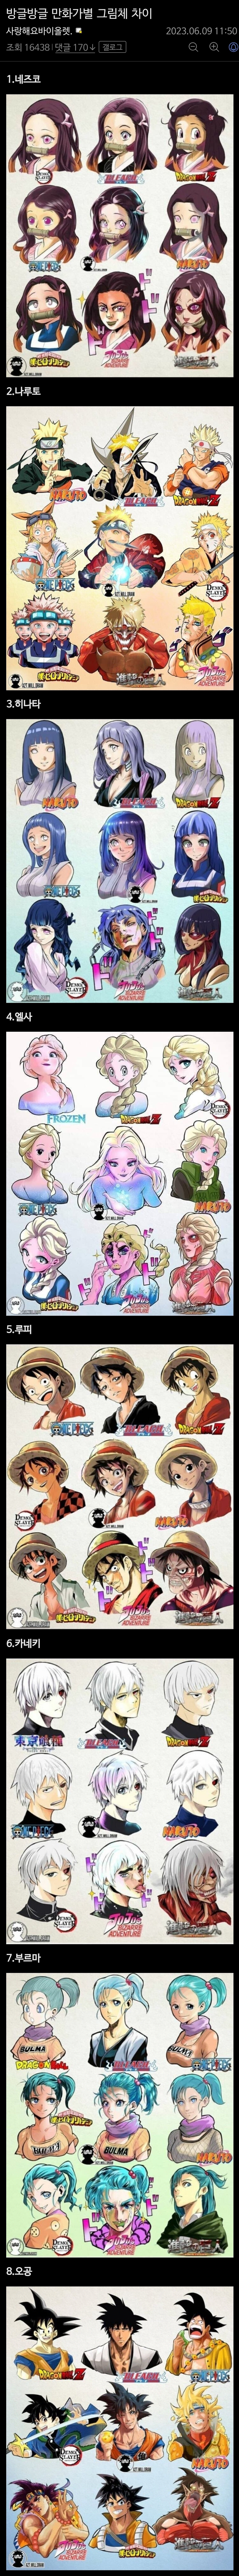 일본 만화가별 그림체 차이.jpg